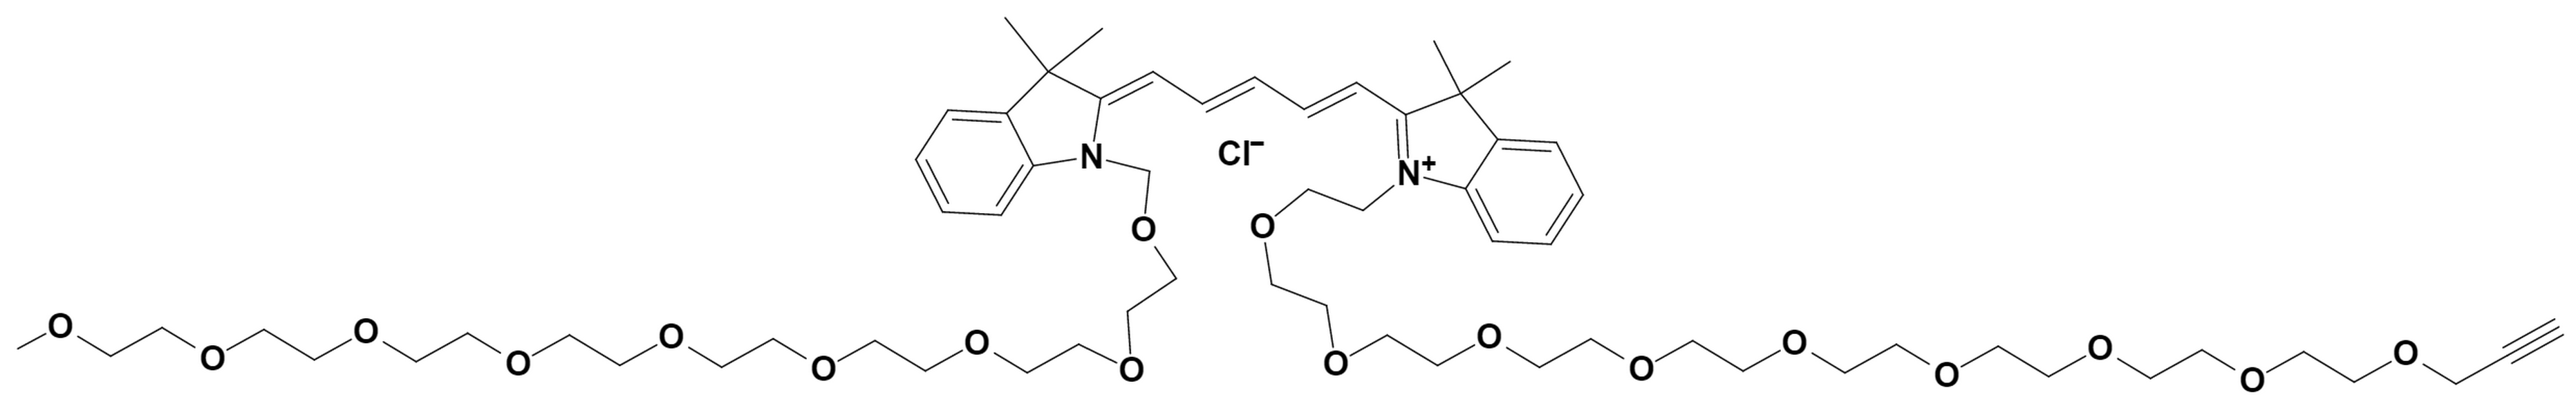 N-(m-PEG9)-N'-(propargyl-PEG9)-Cy5 TFA salt